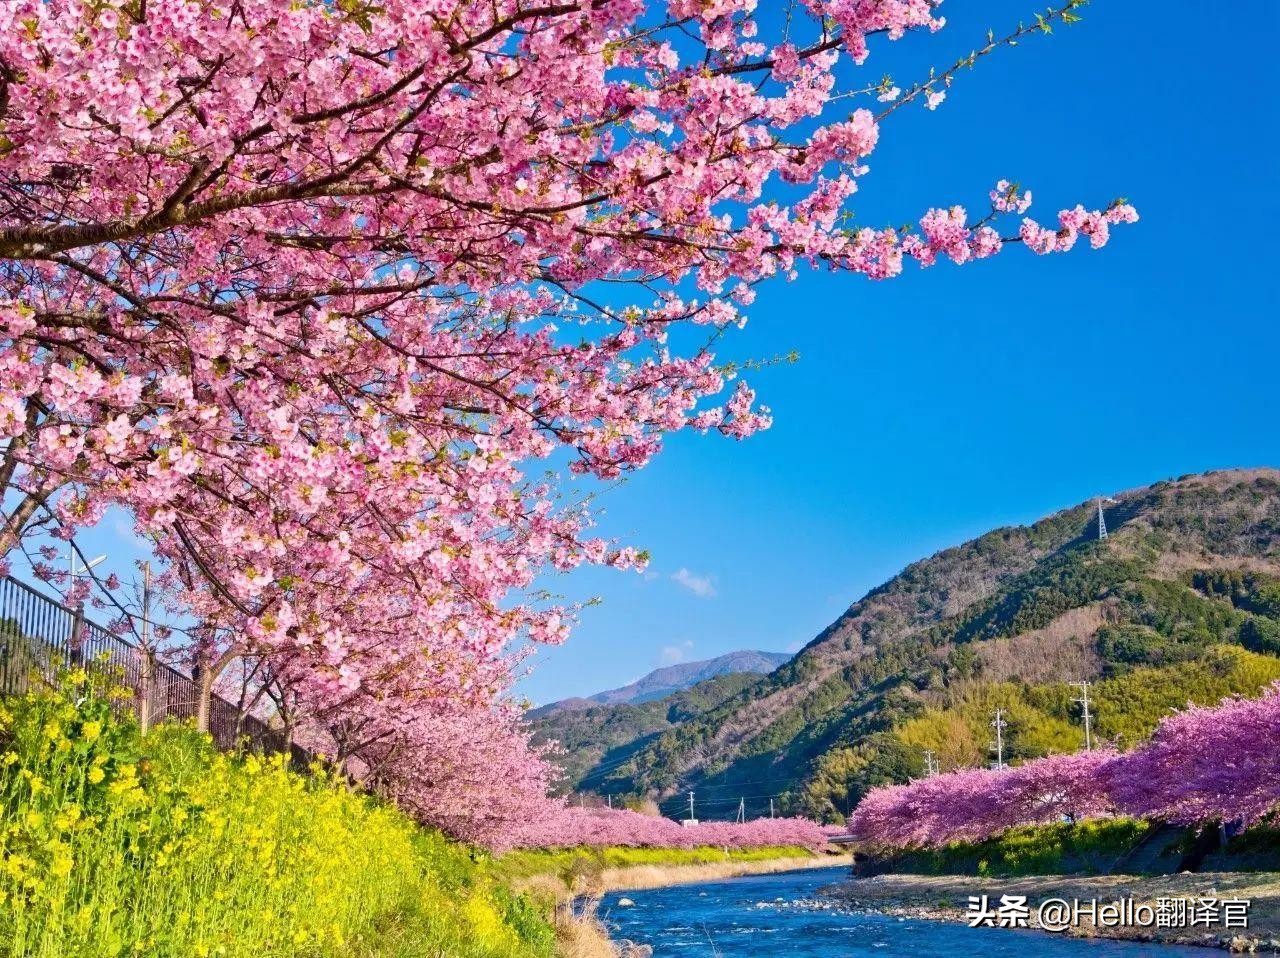 BBC英语阅读和听力素材：日本樱花盛花期提前或因气候变化所致